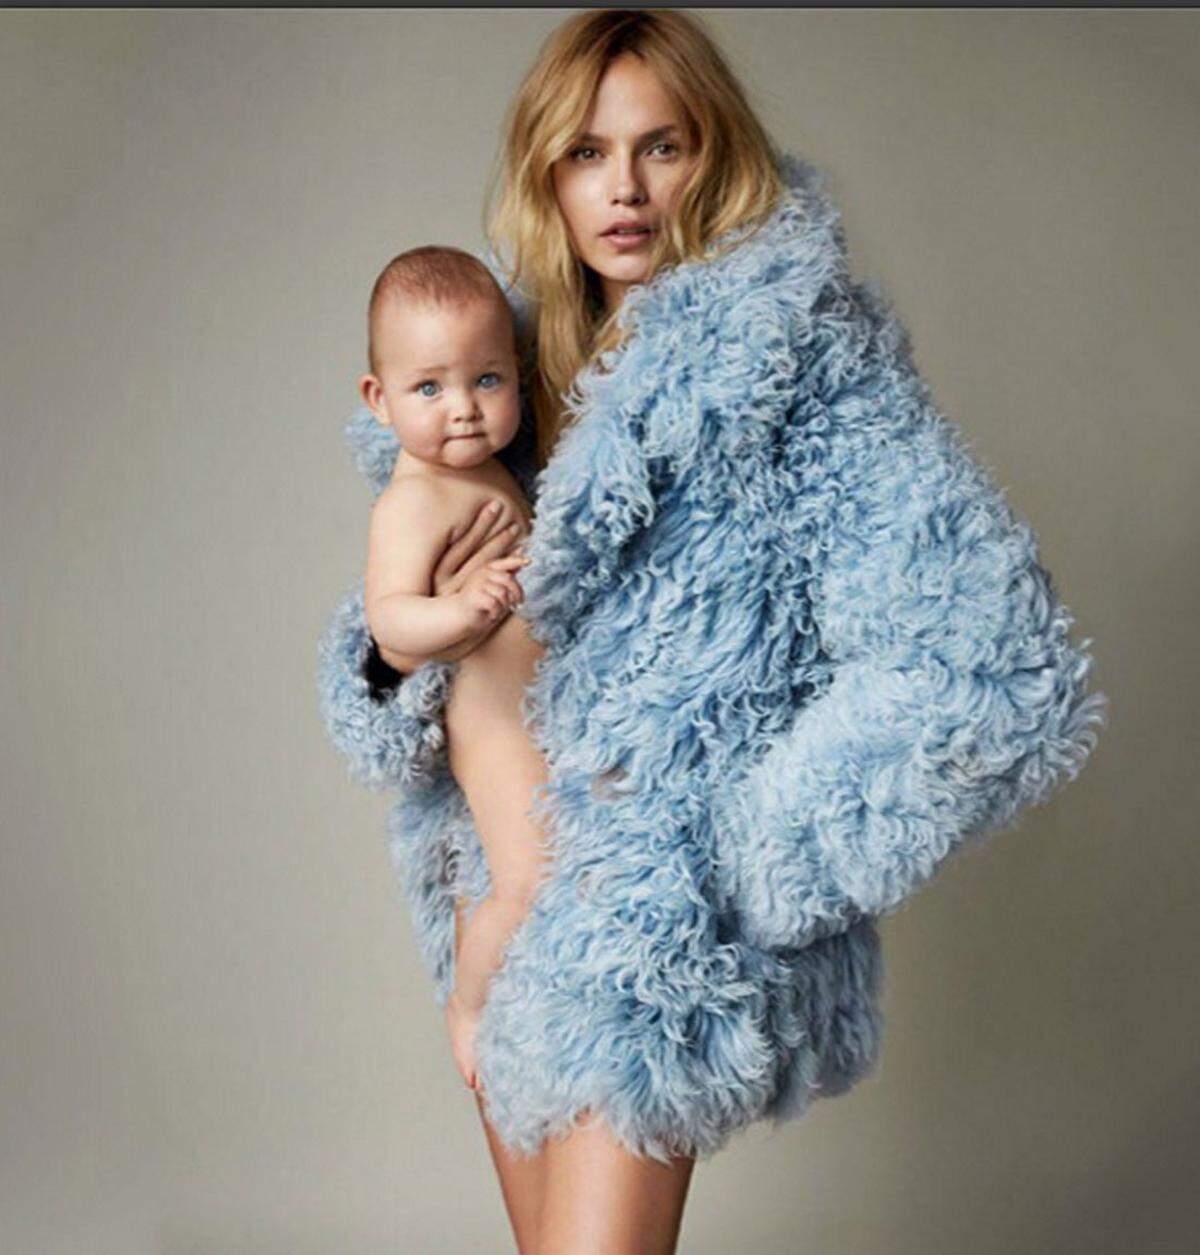 "Es ist so eine Ehre am Oktobercover der Vogue Paris mit meiner Tochter Aleksandra zu sein. Vielen Dank an Emmanuelle Alt und Mario Testino für diese tolle Gelegenheit. Dafür, dass sie diesen historischen Moment in unserem Leben eingefangen haben", schrieb das Topmodel auf Instagram.